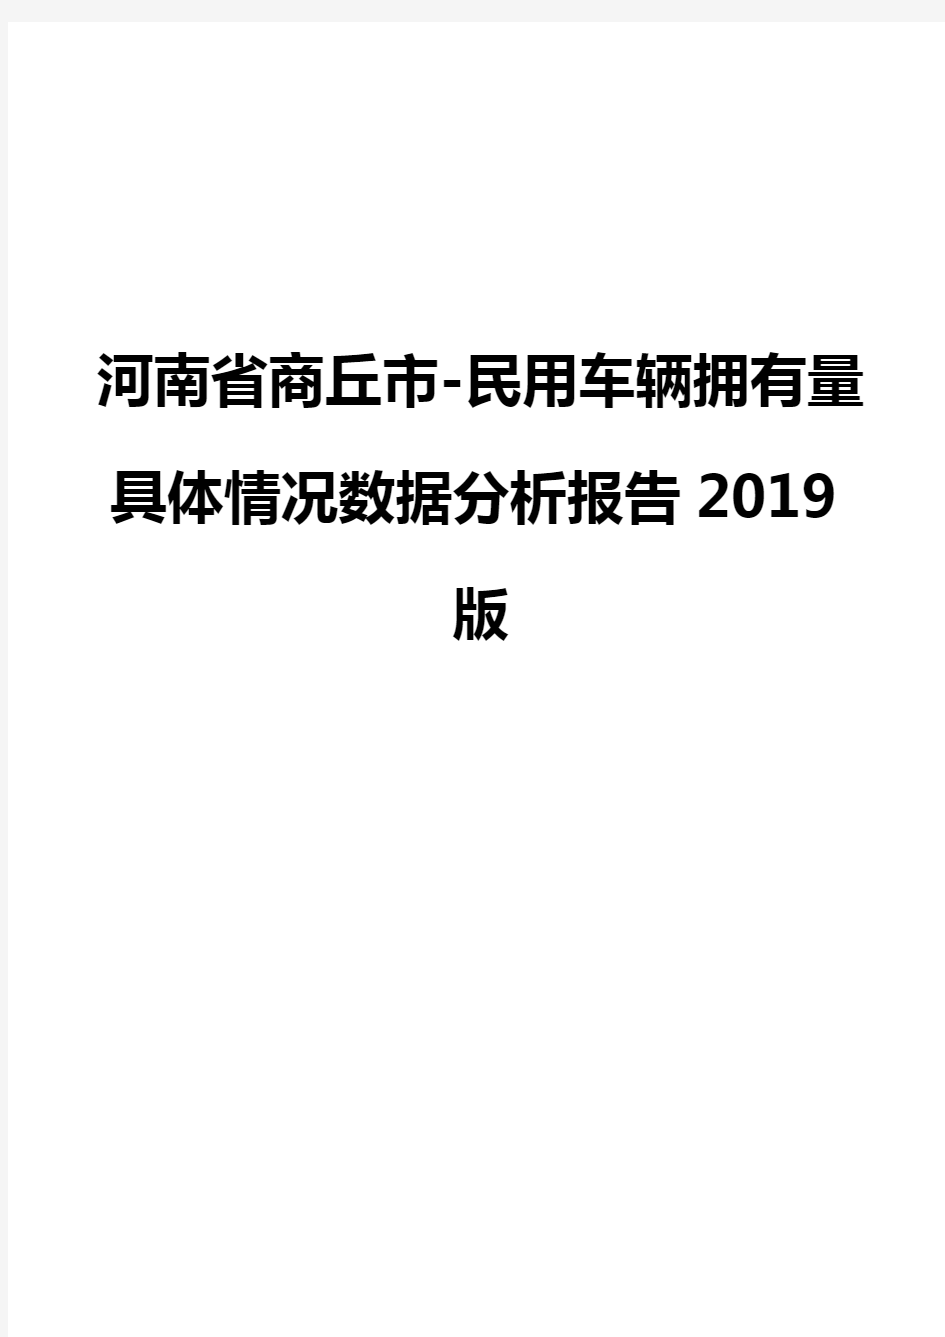 河南省商丘市-民用车辆拥有量具体情况数据分析报告2019版